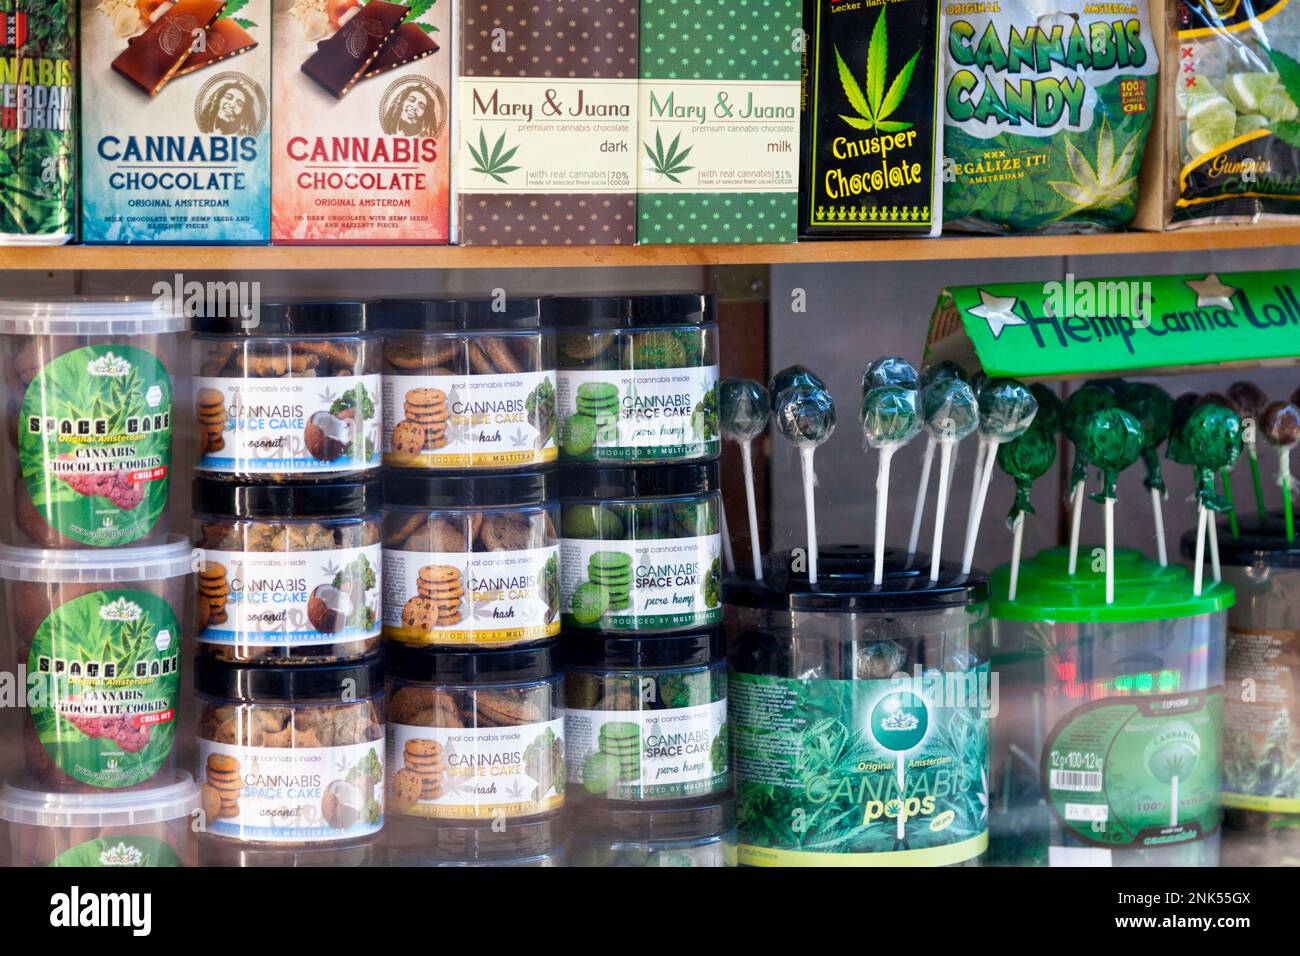 Amsterdam, Niederlande - August 27 2017: Vielfalt an Cannabisprodukten in einer Vitrine in einem Café in Amsterdam. Stockfoto